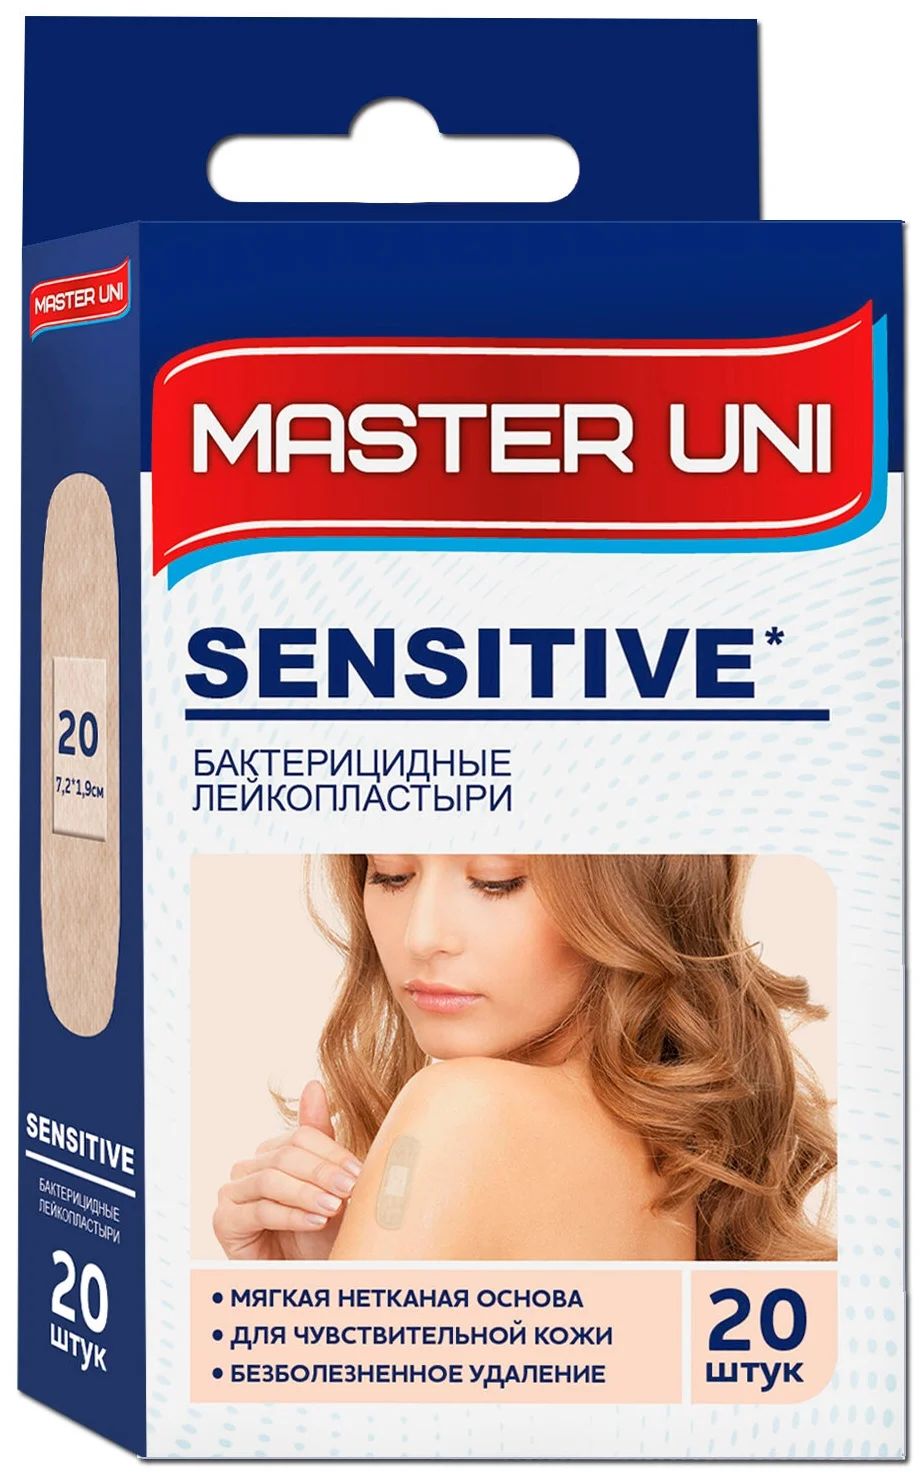 Пластырь Master uni Sensitive бактерицидный, на нетканой основе, 20 шт.